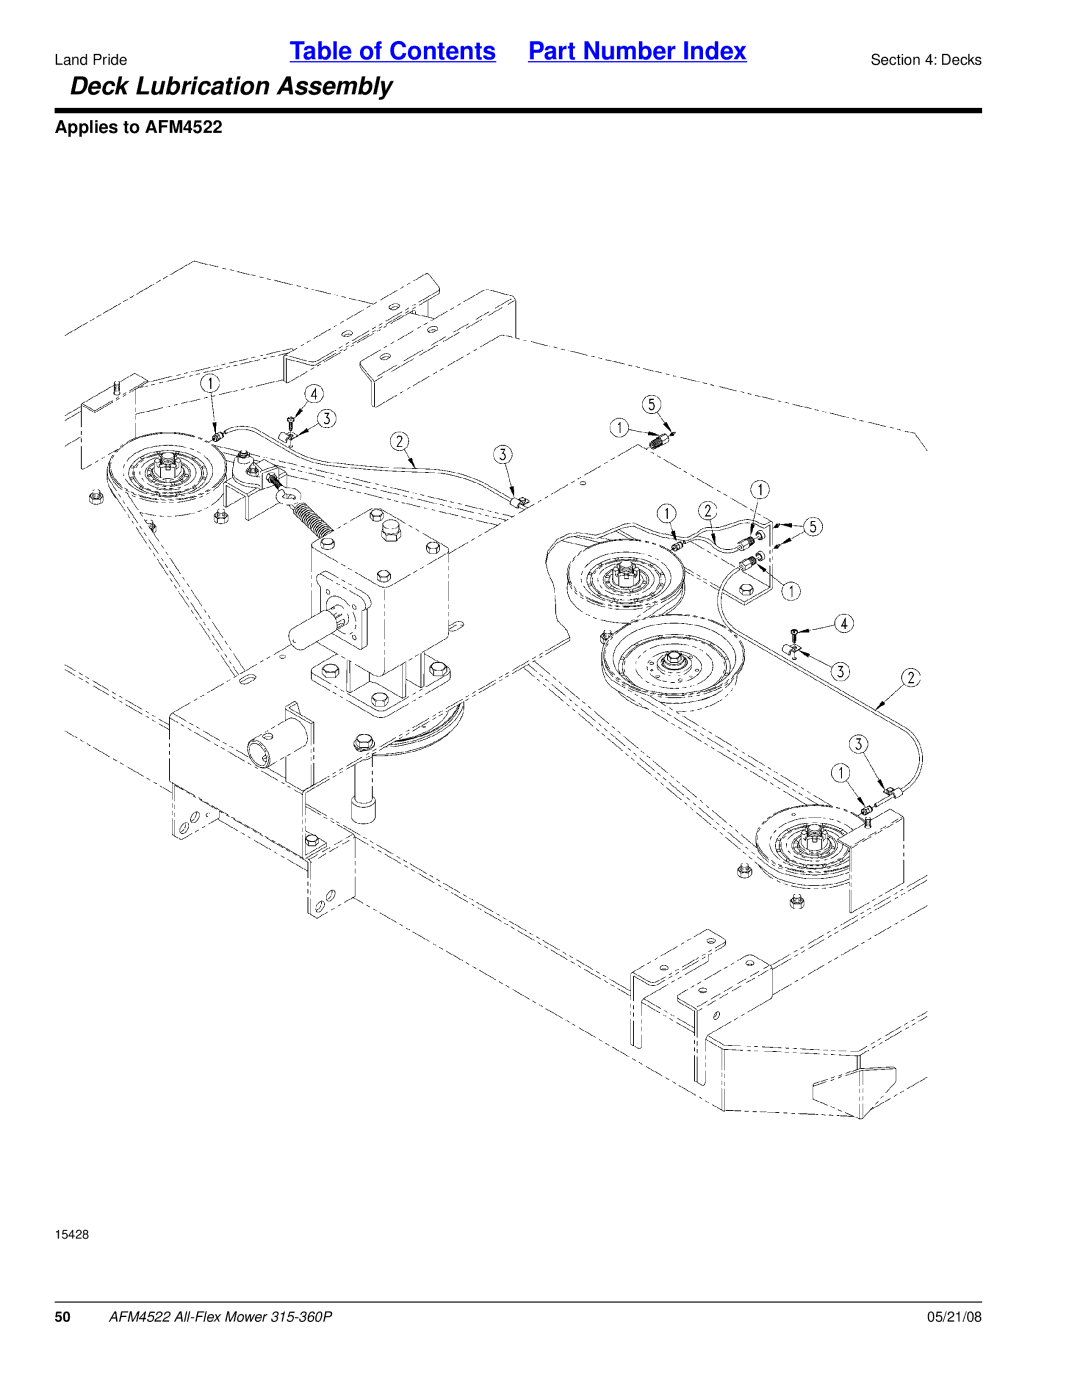 Land Pride AFM4522 manual Deck Lubrication Assembly 